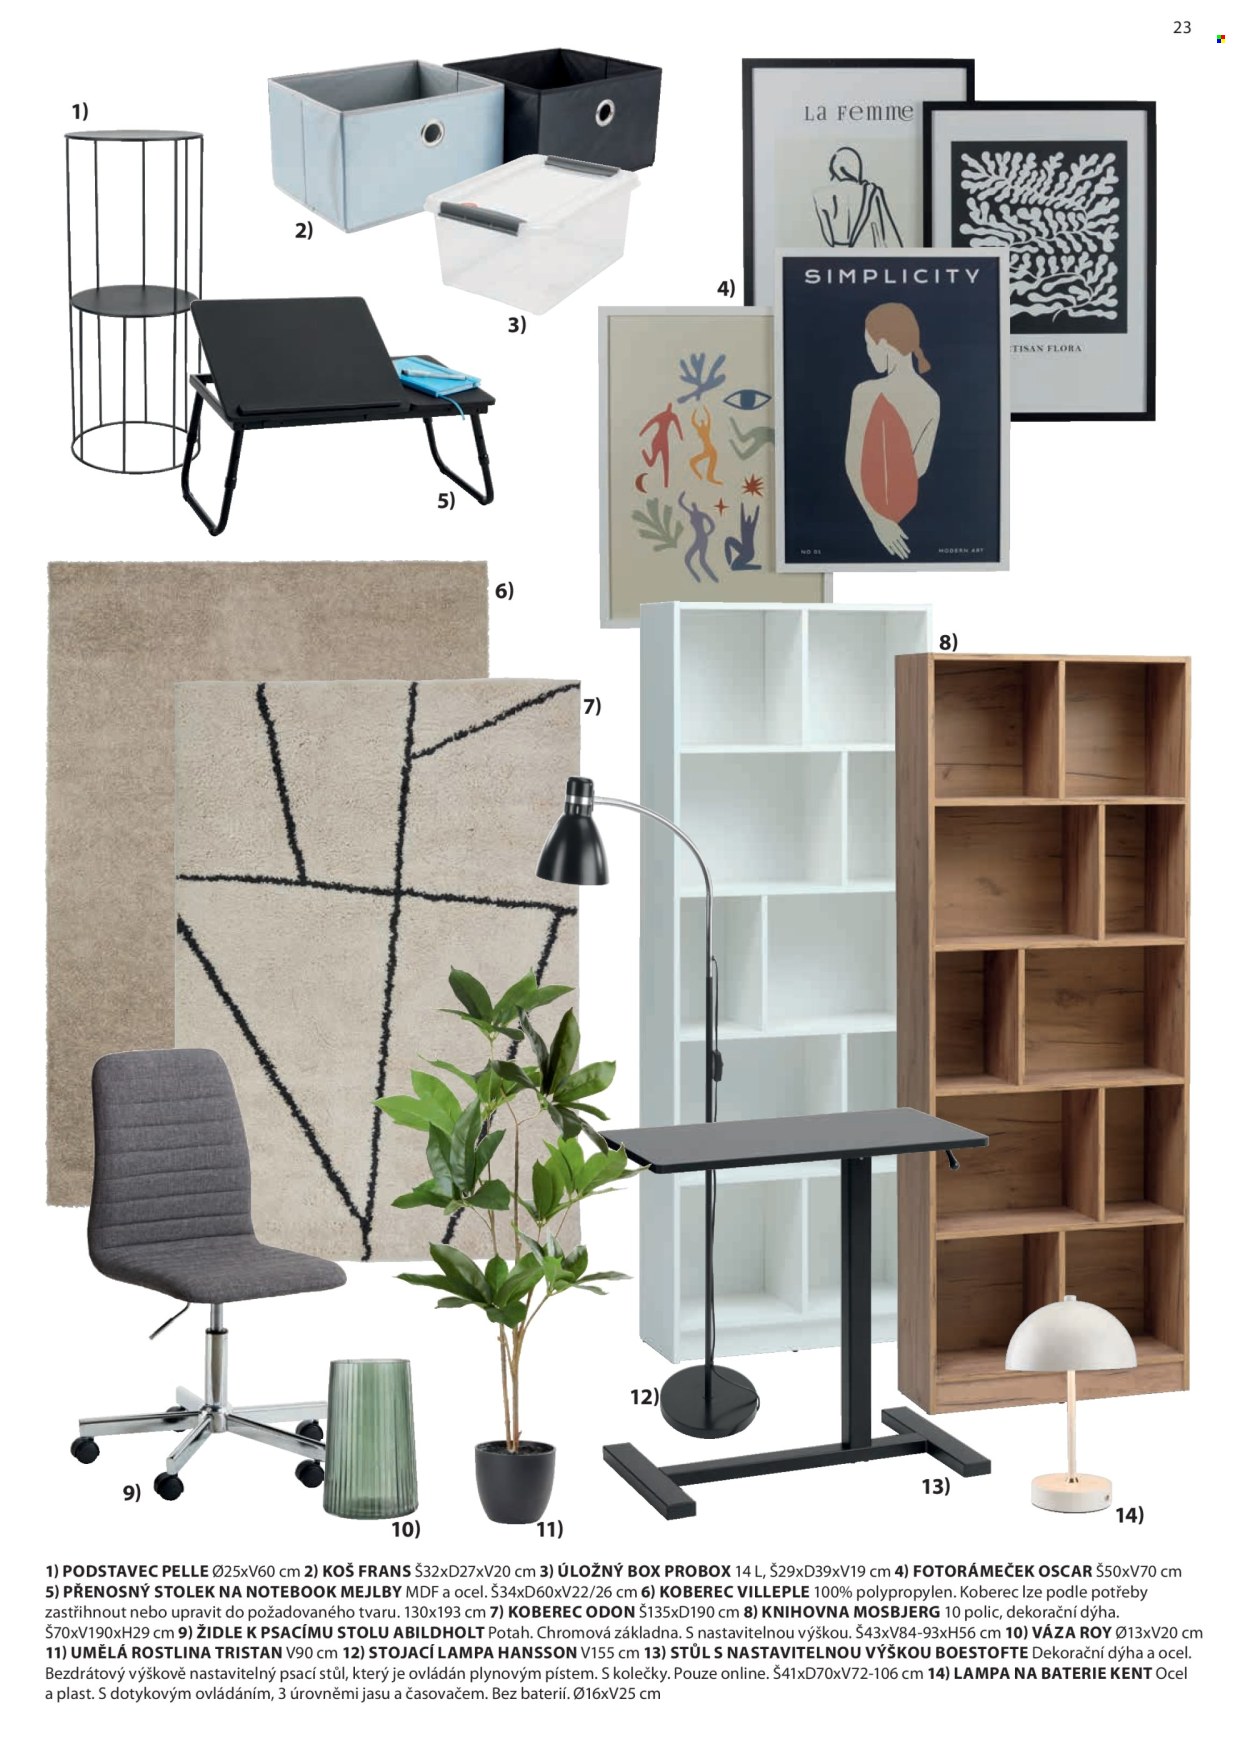 thumbnail - Leták JYSK - Produkty v akci - podstavec, úložný box, koberec, fotorámeček, knihovna, židle, potah, váza, umělá rostlina, lampa, stojací lampa, stůl. Strana 24.